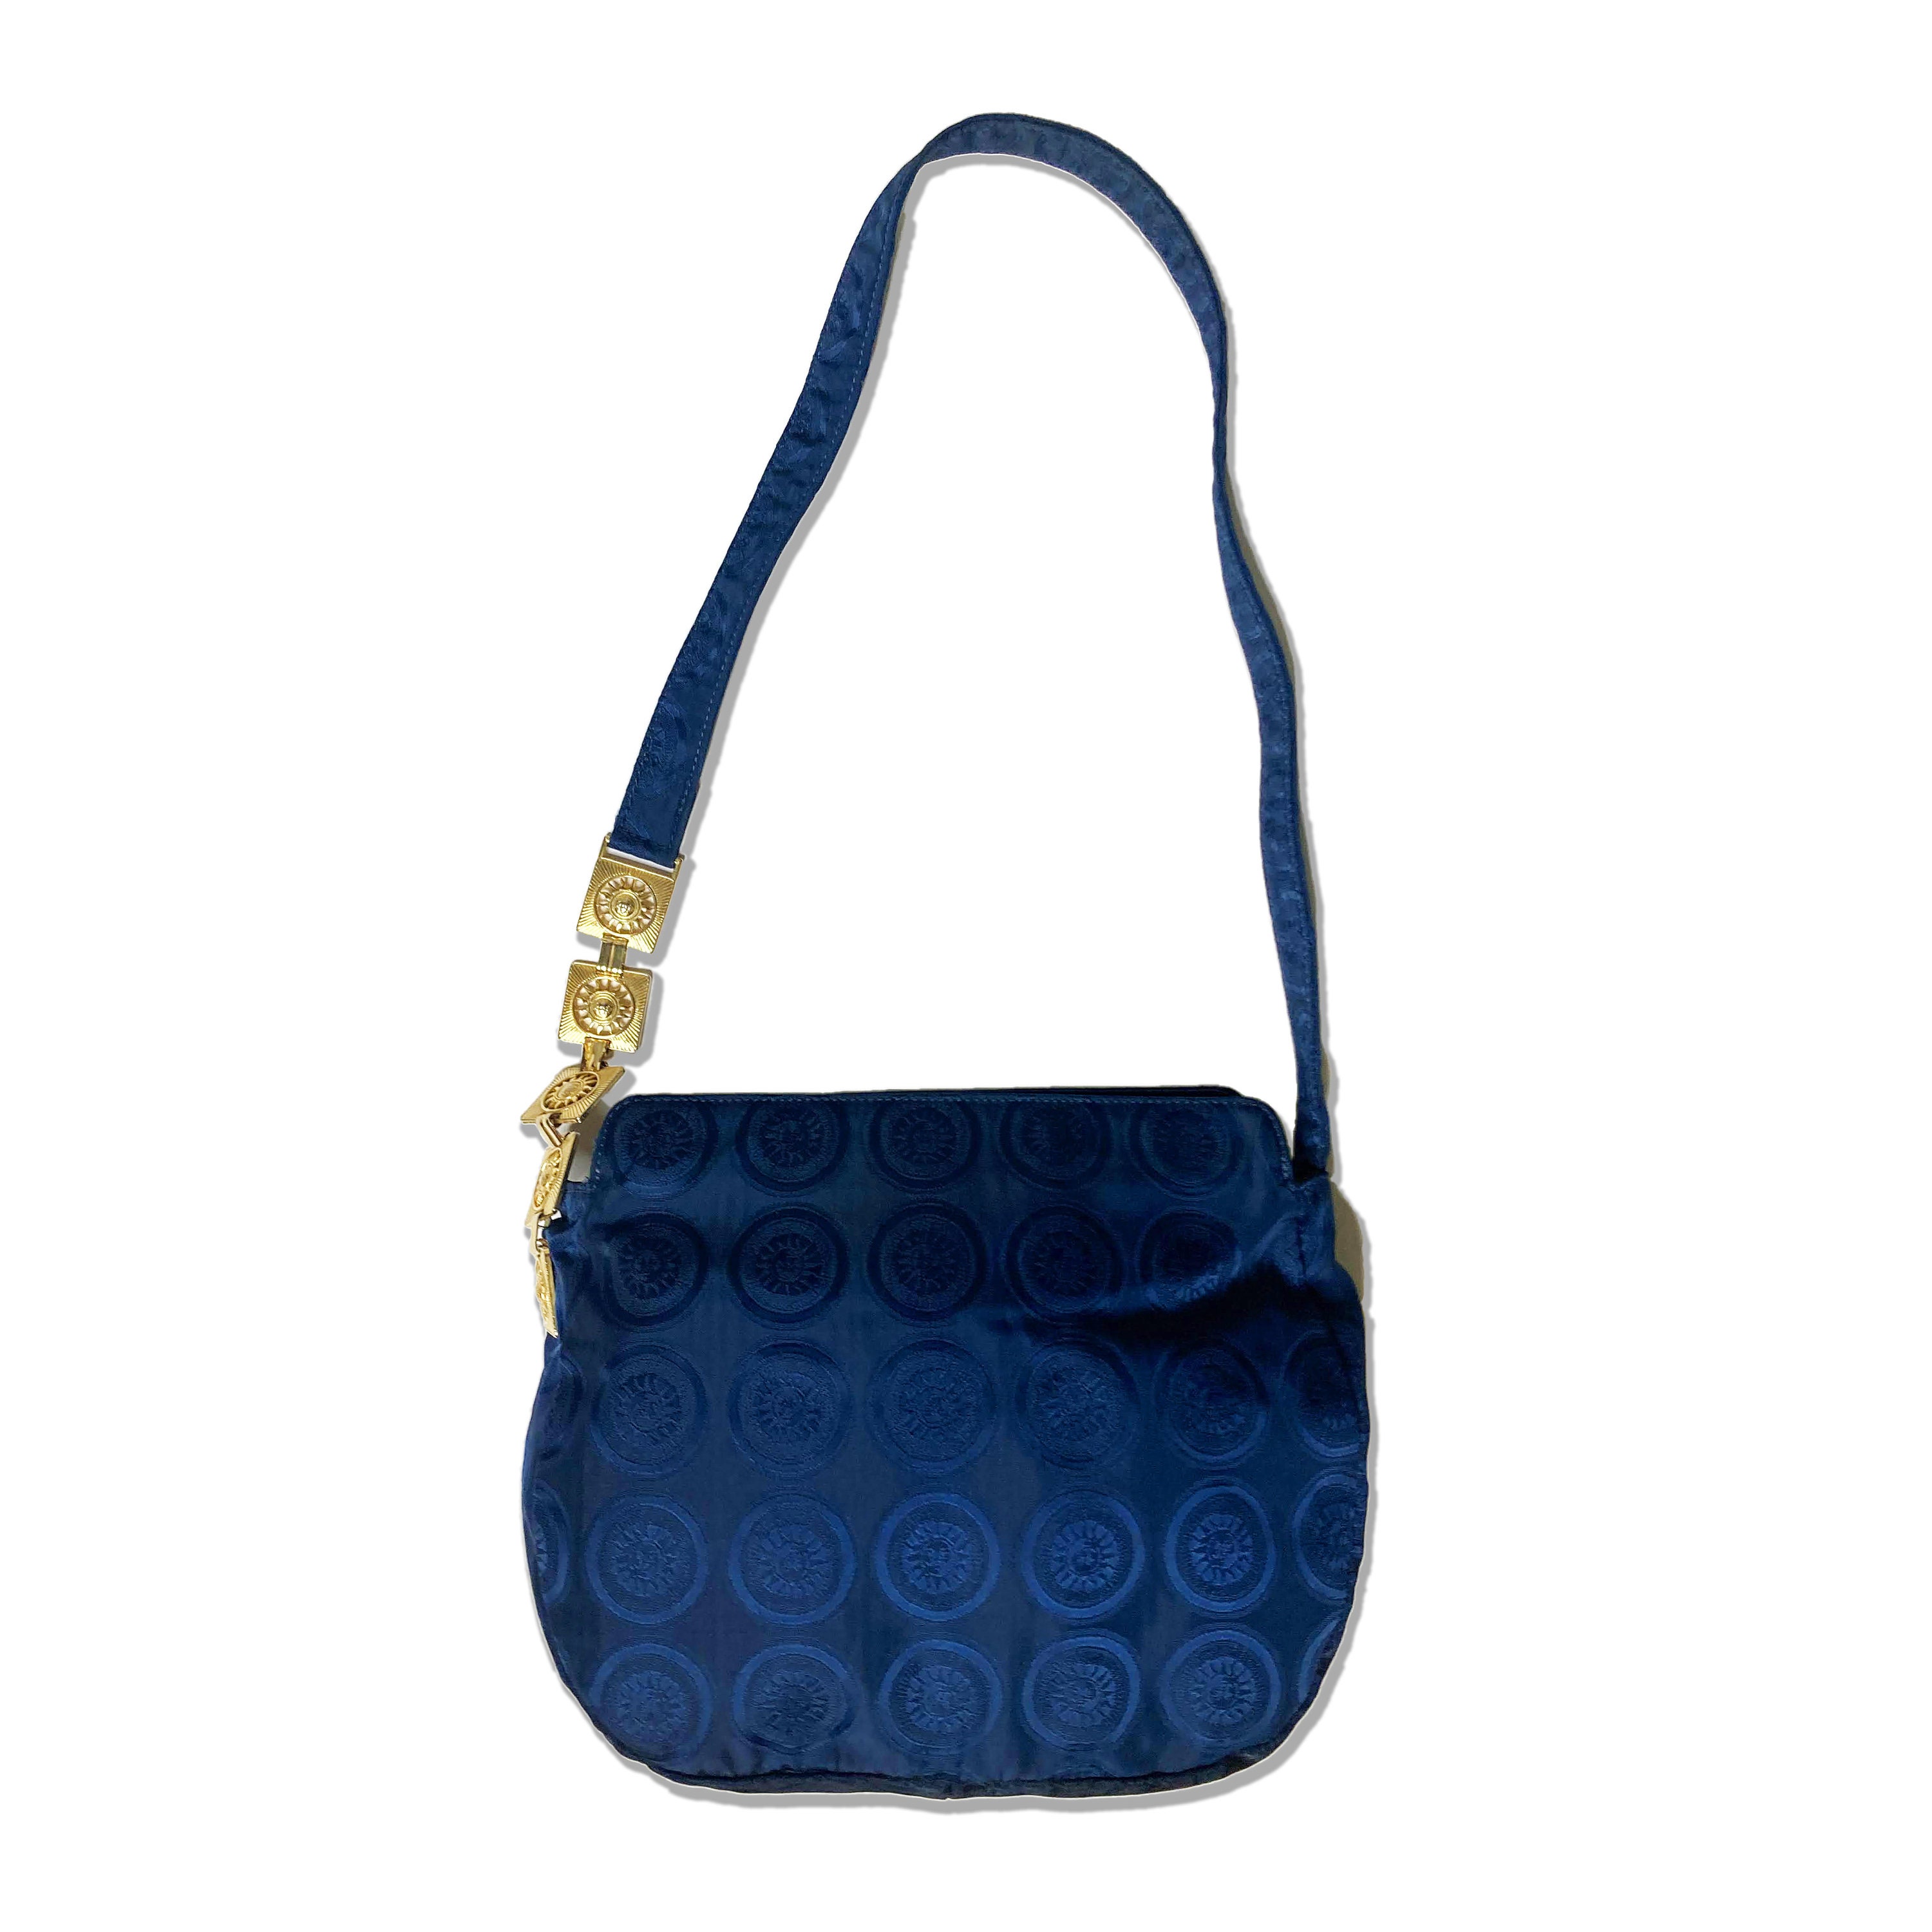 Versace - Authenticated La Medusa Handbag - Leather Blue Plain for Women, Never Worn